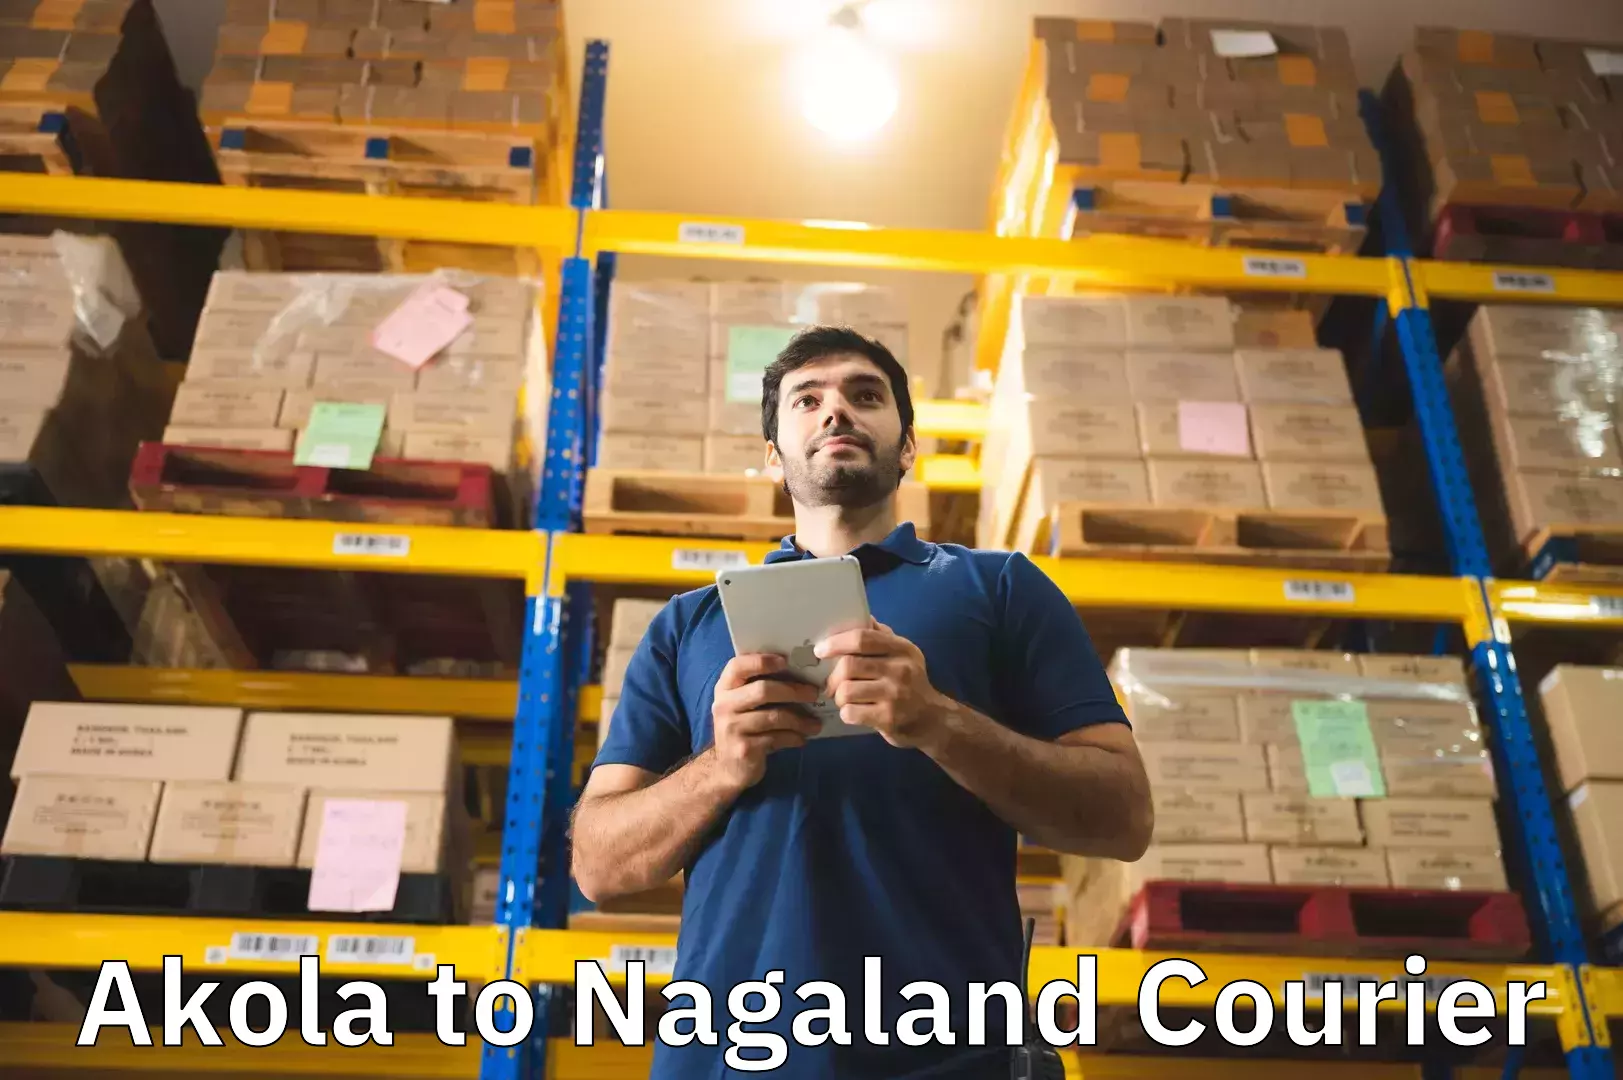 Baggage transport scheduler Akola to Nagaland